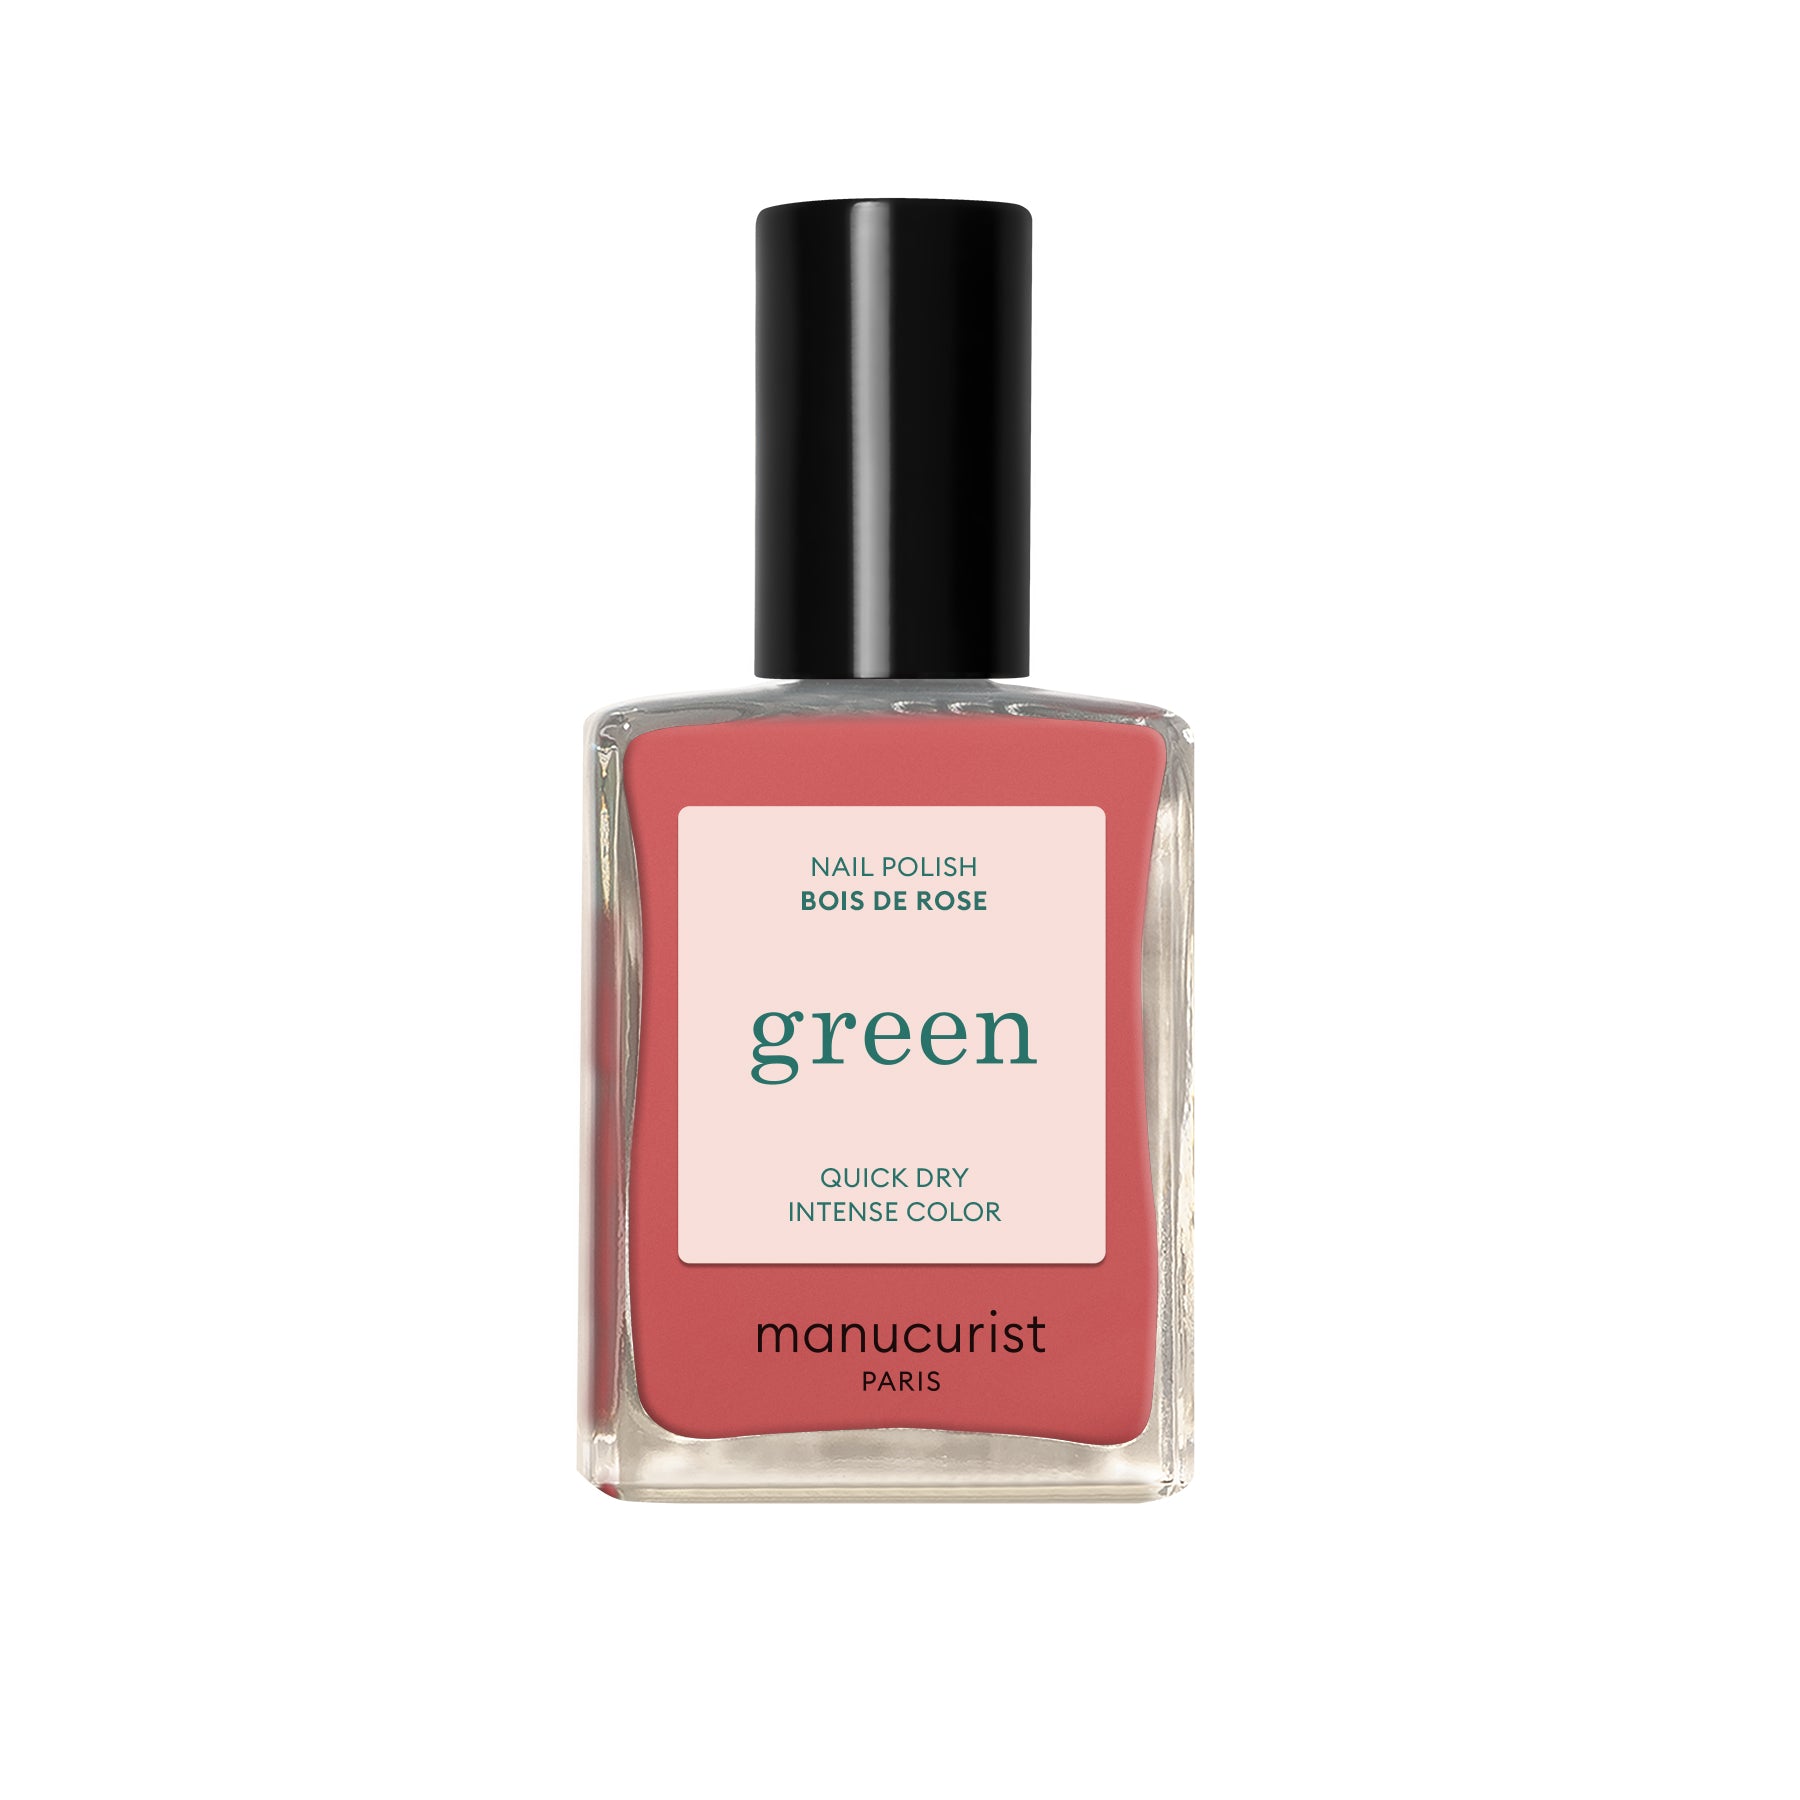 Manucurist Green lak na nehty - Bois de rose (15 ml) - dusty pink odstín Manucurist